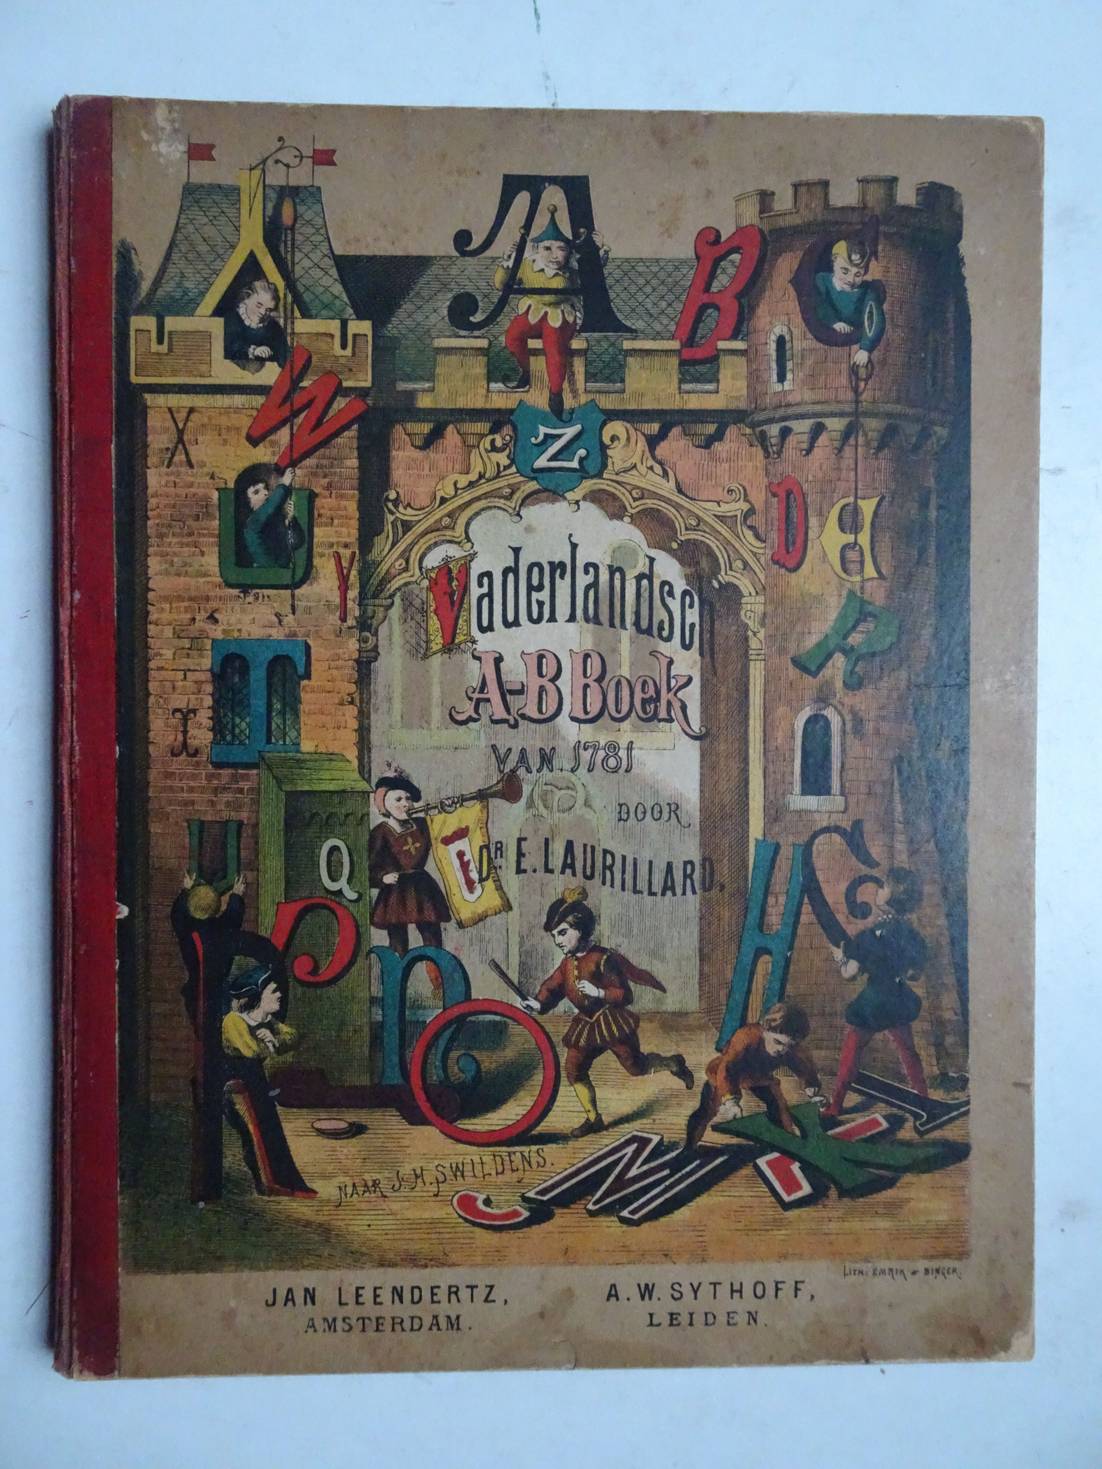 Swildens, J.H. & E. Laurillard. - Mr. J.H. Swildens Vaderlandsch AB-Boek van 1781. Met versjes van Dr. E. Laurillard.